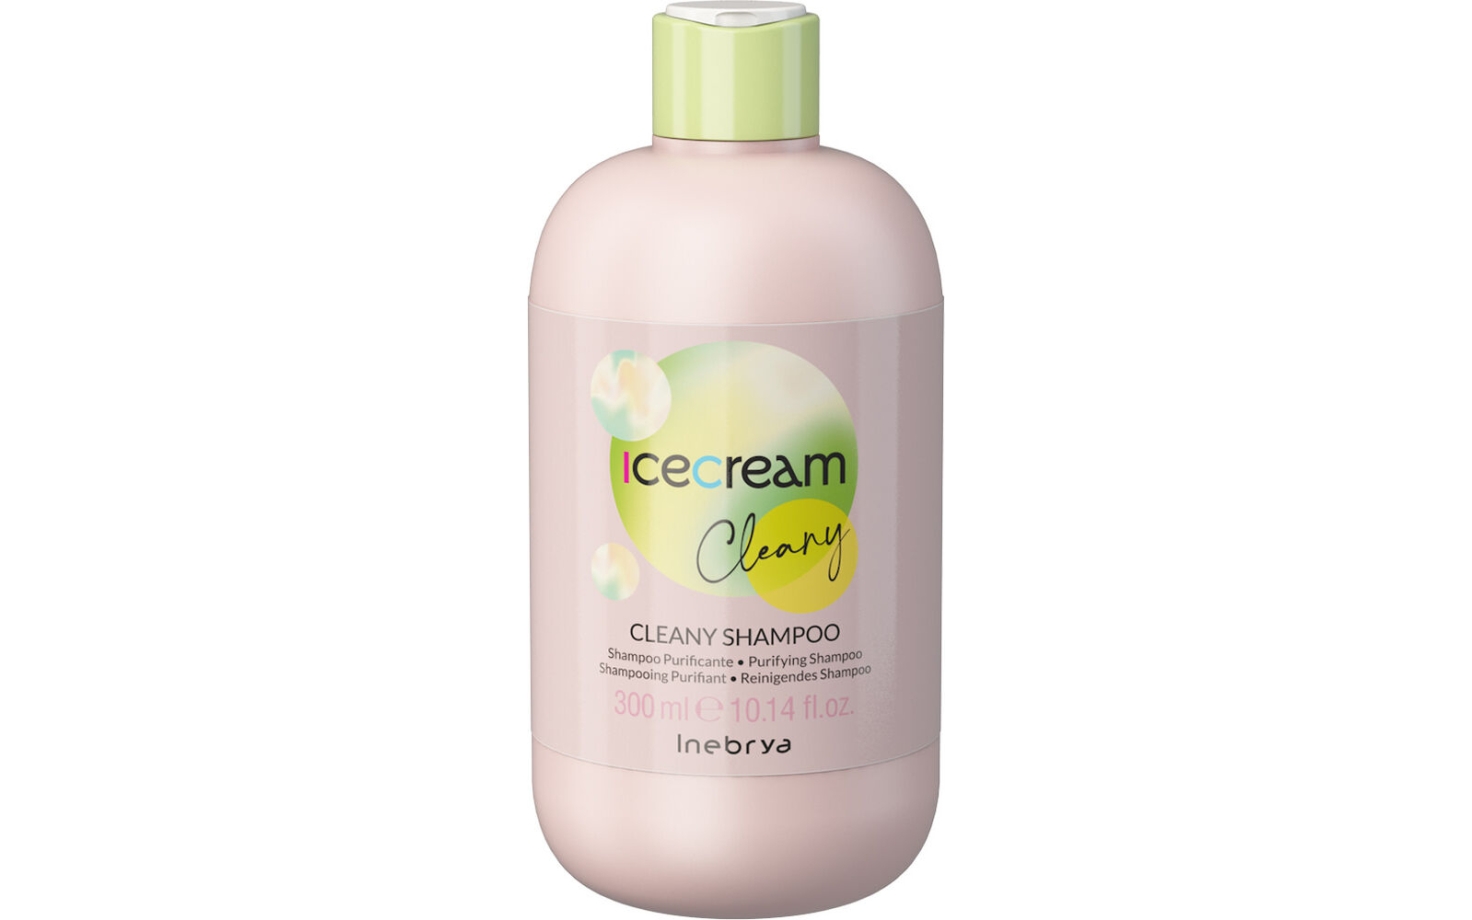 Icecream Cleany Cleany Shampoo